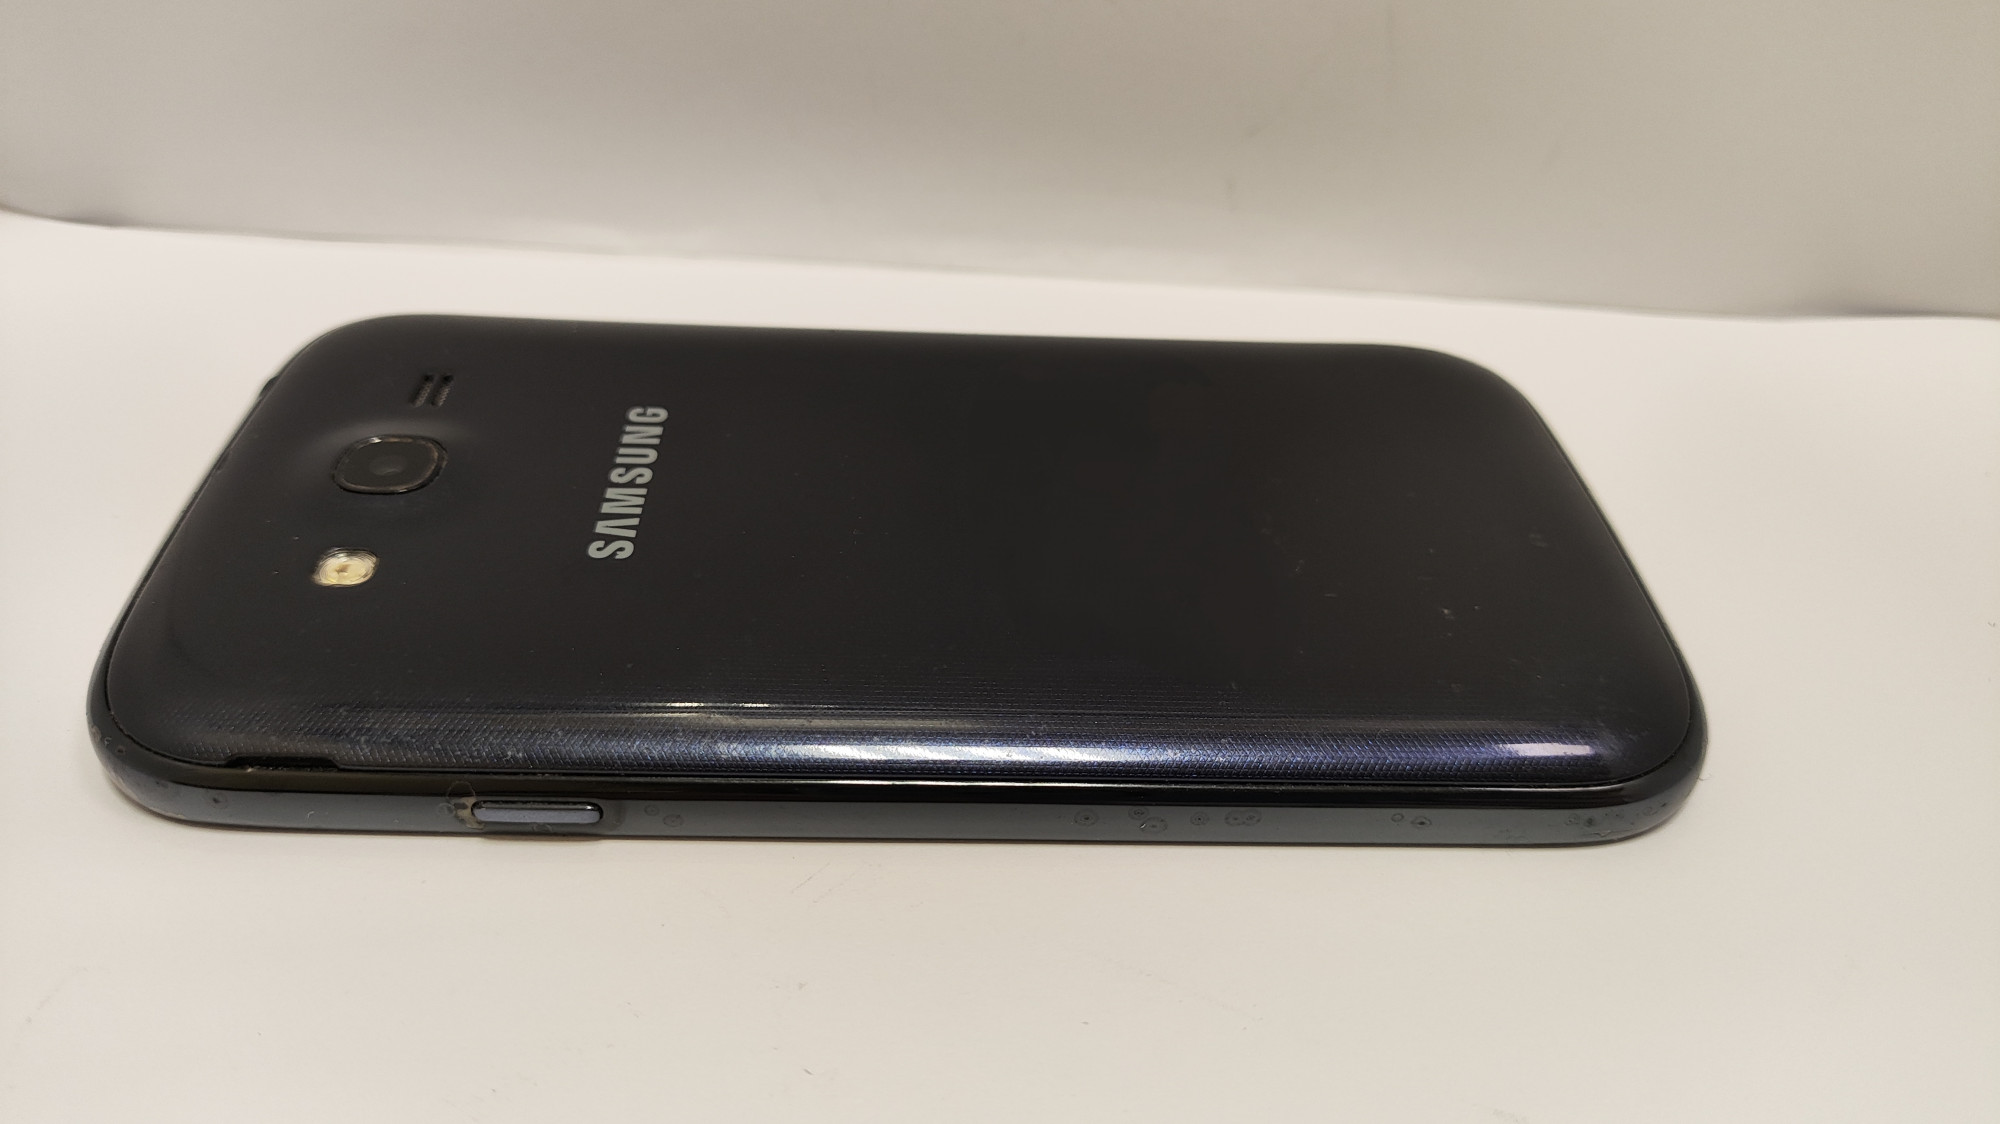 Samsung Galaxy Grand Duos Elegant (GT-I9082) 1/8Gb 2